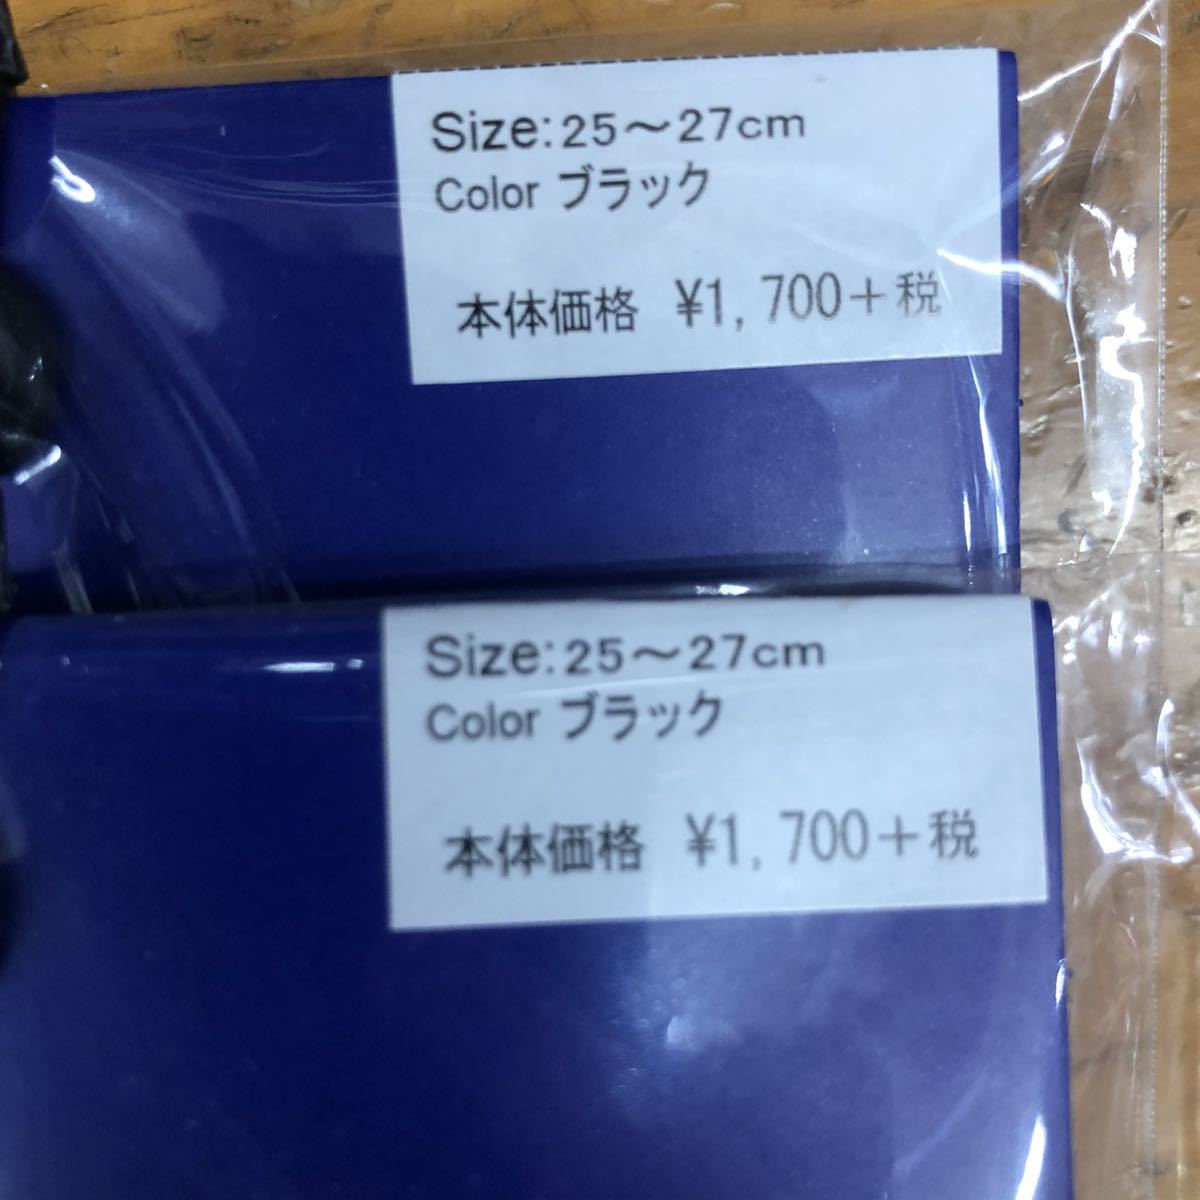 25.26.27cm обычная цена 3740 иен 2 пар комплект Mizuno 2P носки носки черный чёрный бег скольжение прекращение спорт мужской наземный 